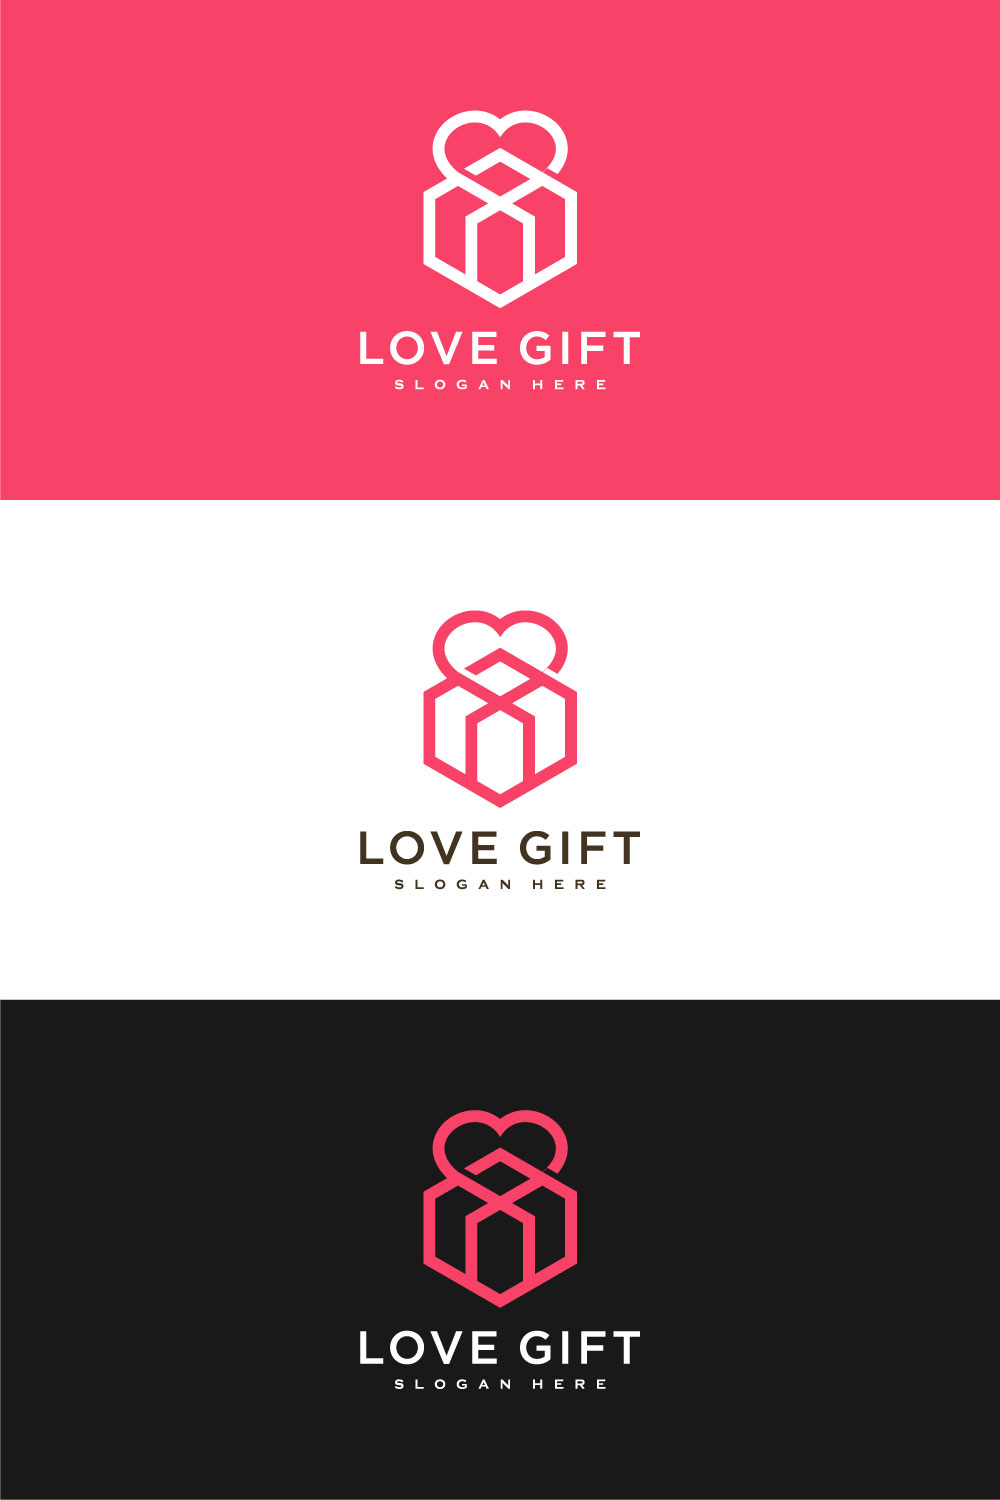 Love Gift Logo Vector Line Style pinterest.